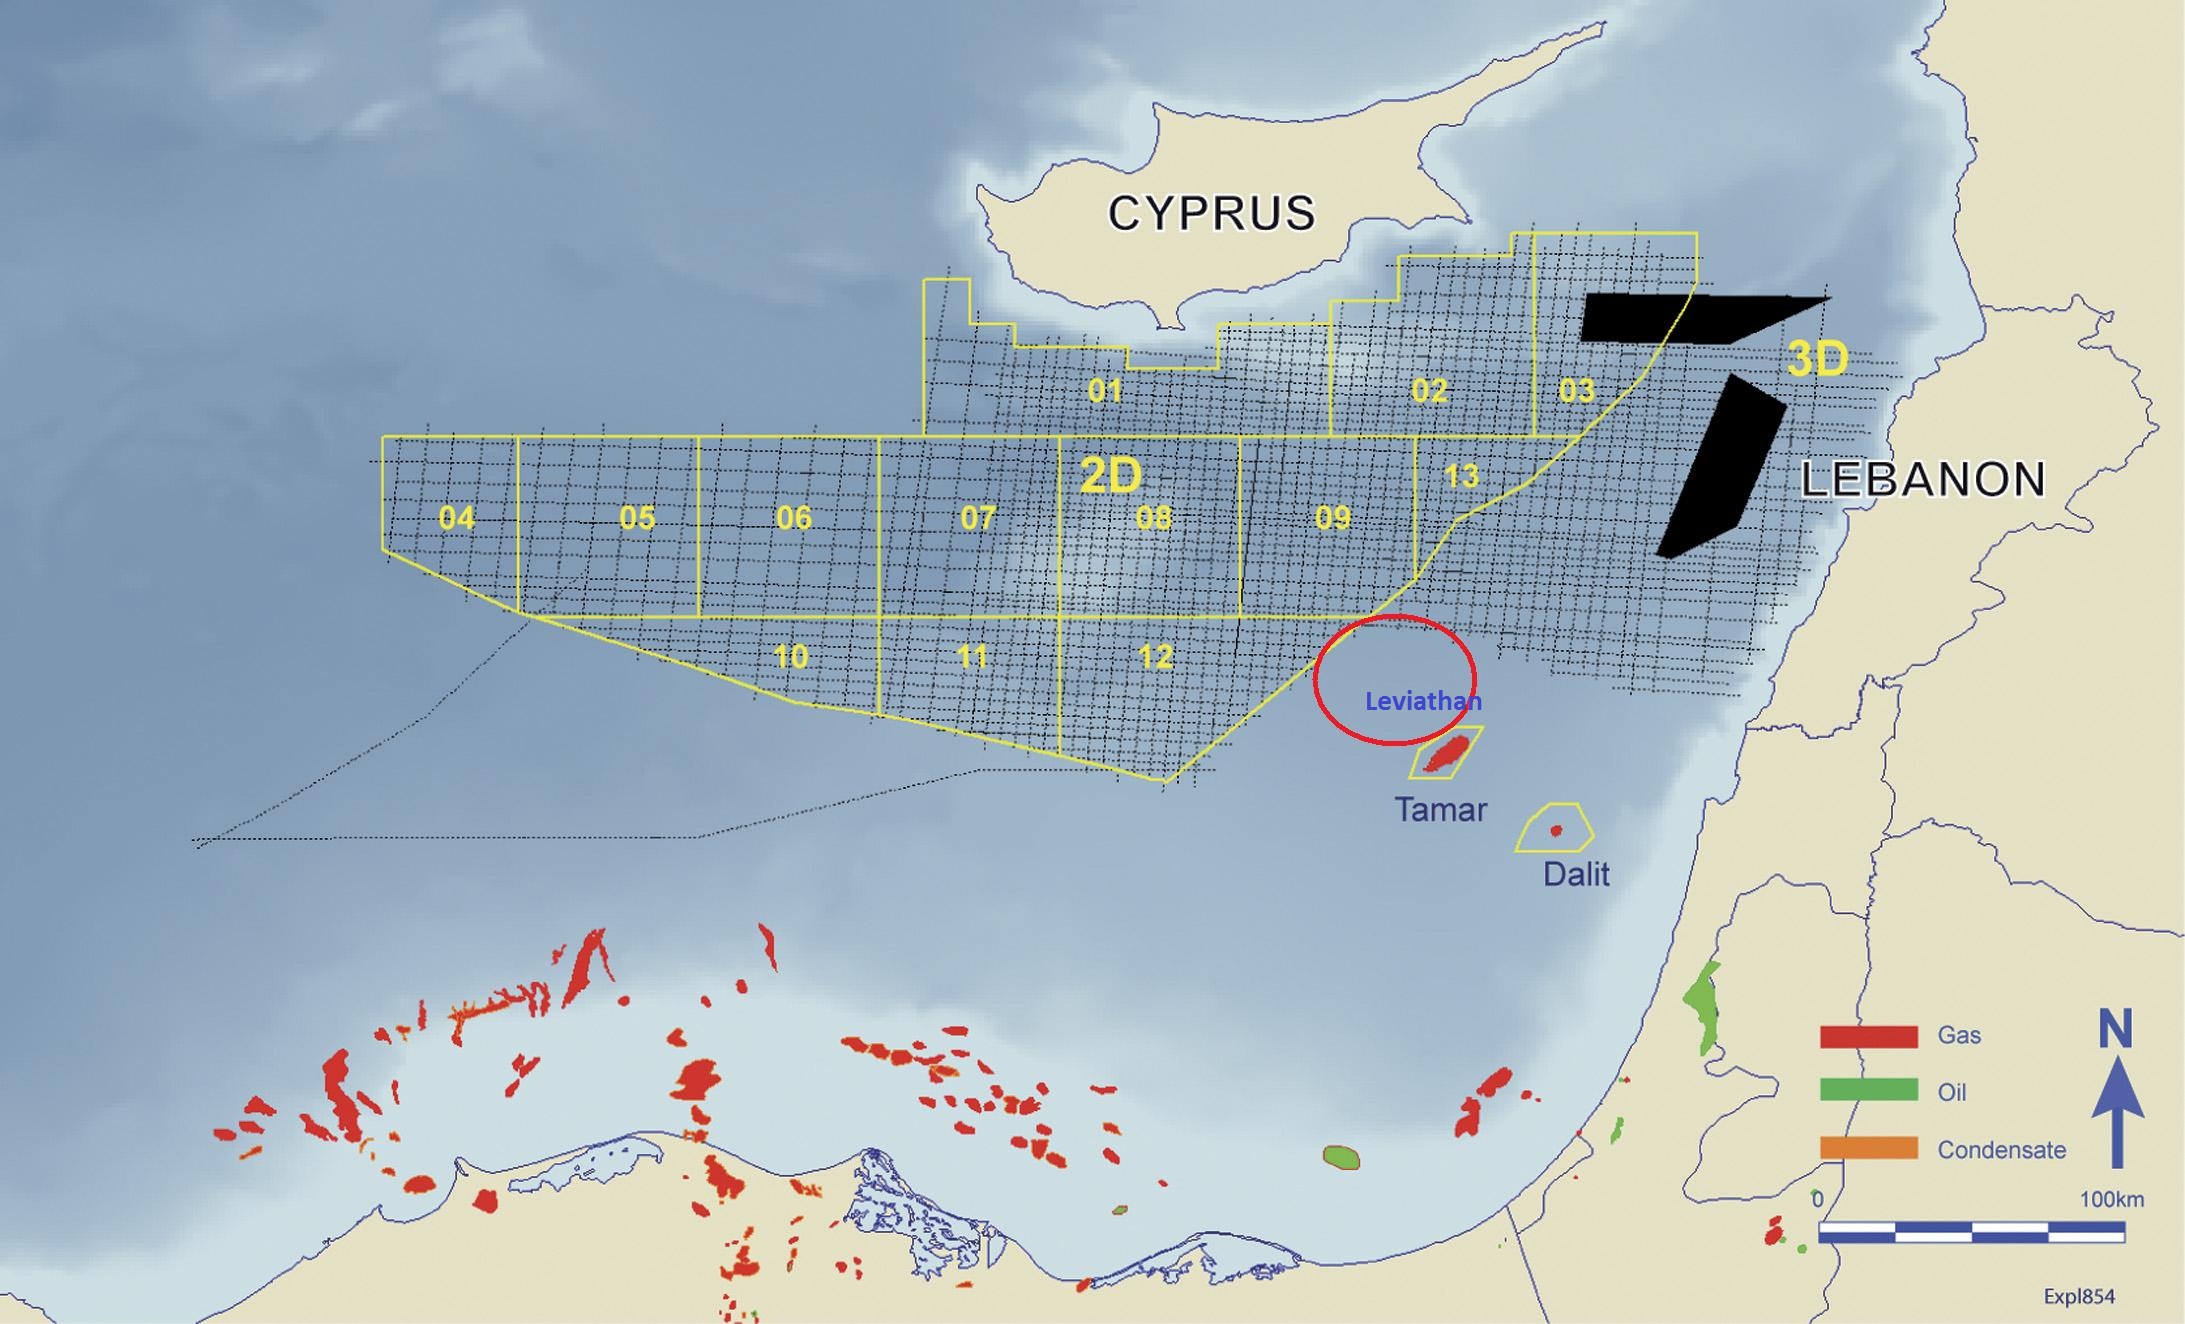 Η Κύπρος αλώνεται εκ των έσω: Εφιαλτικές φωνές στο περιβάλλον Αναστασιάδη ζητούν «Συγκυριαρχία με τους Τουρκοκύπριους»